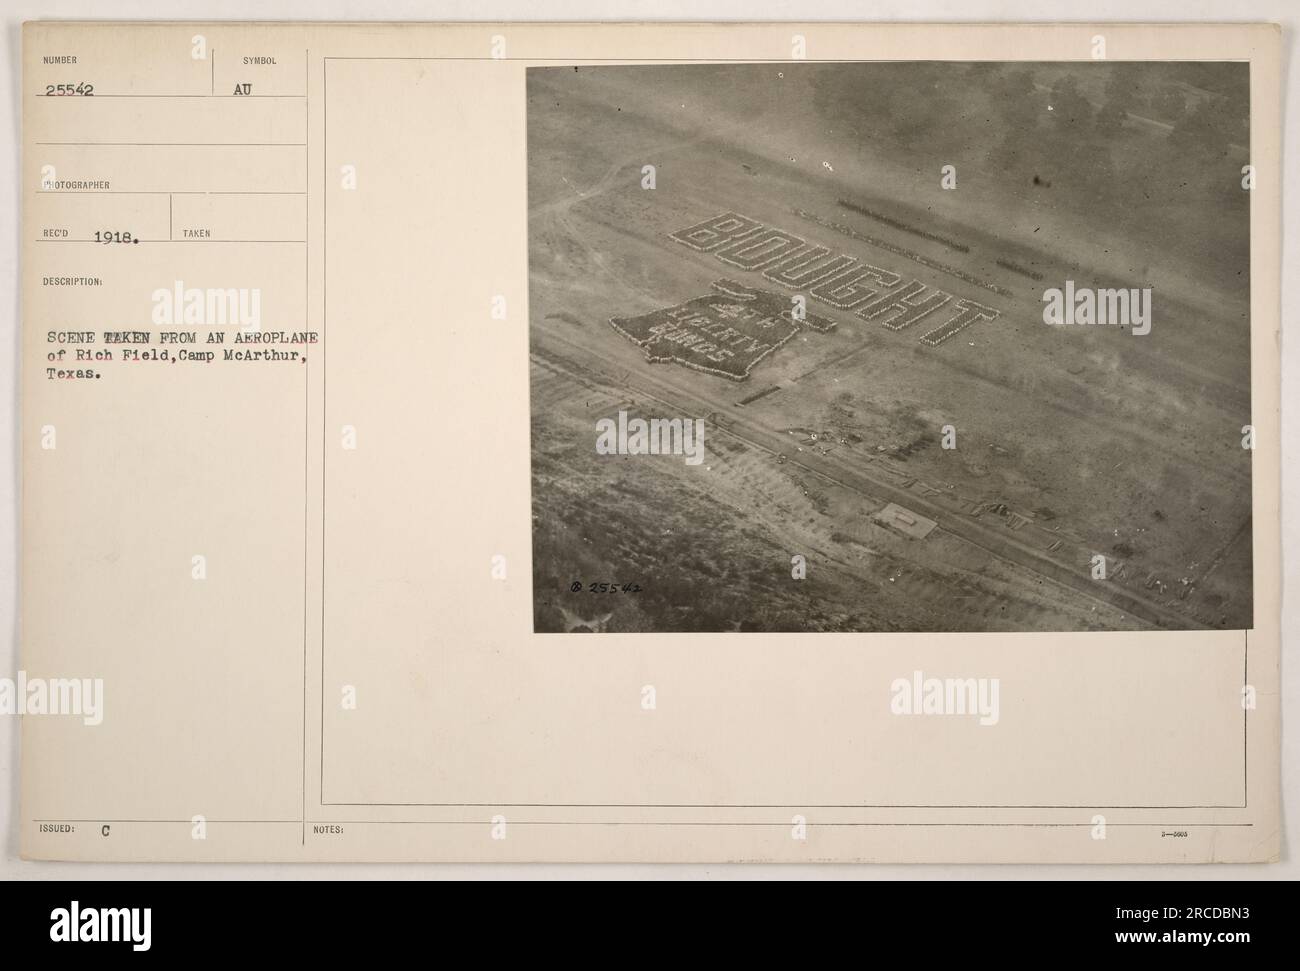 Luftfoto aufgenommen 1918 von einem Flugzeug, das über Rich Field, Camp McArthur, Texas fliegt. Dieses Bild zeigt eine symbolische Darstellung der unten dargestellten Szene, die die militärischen Aktivitäten während des Ersten Weltkriegs erfasst. Das Foto hat die Nummer 25542 und wurde von einem Fotografen des Kriegsministeriums namens RECO aufgenommen. Stockfoto